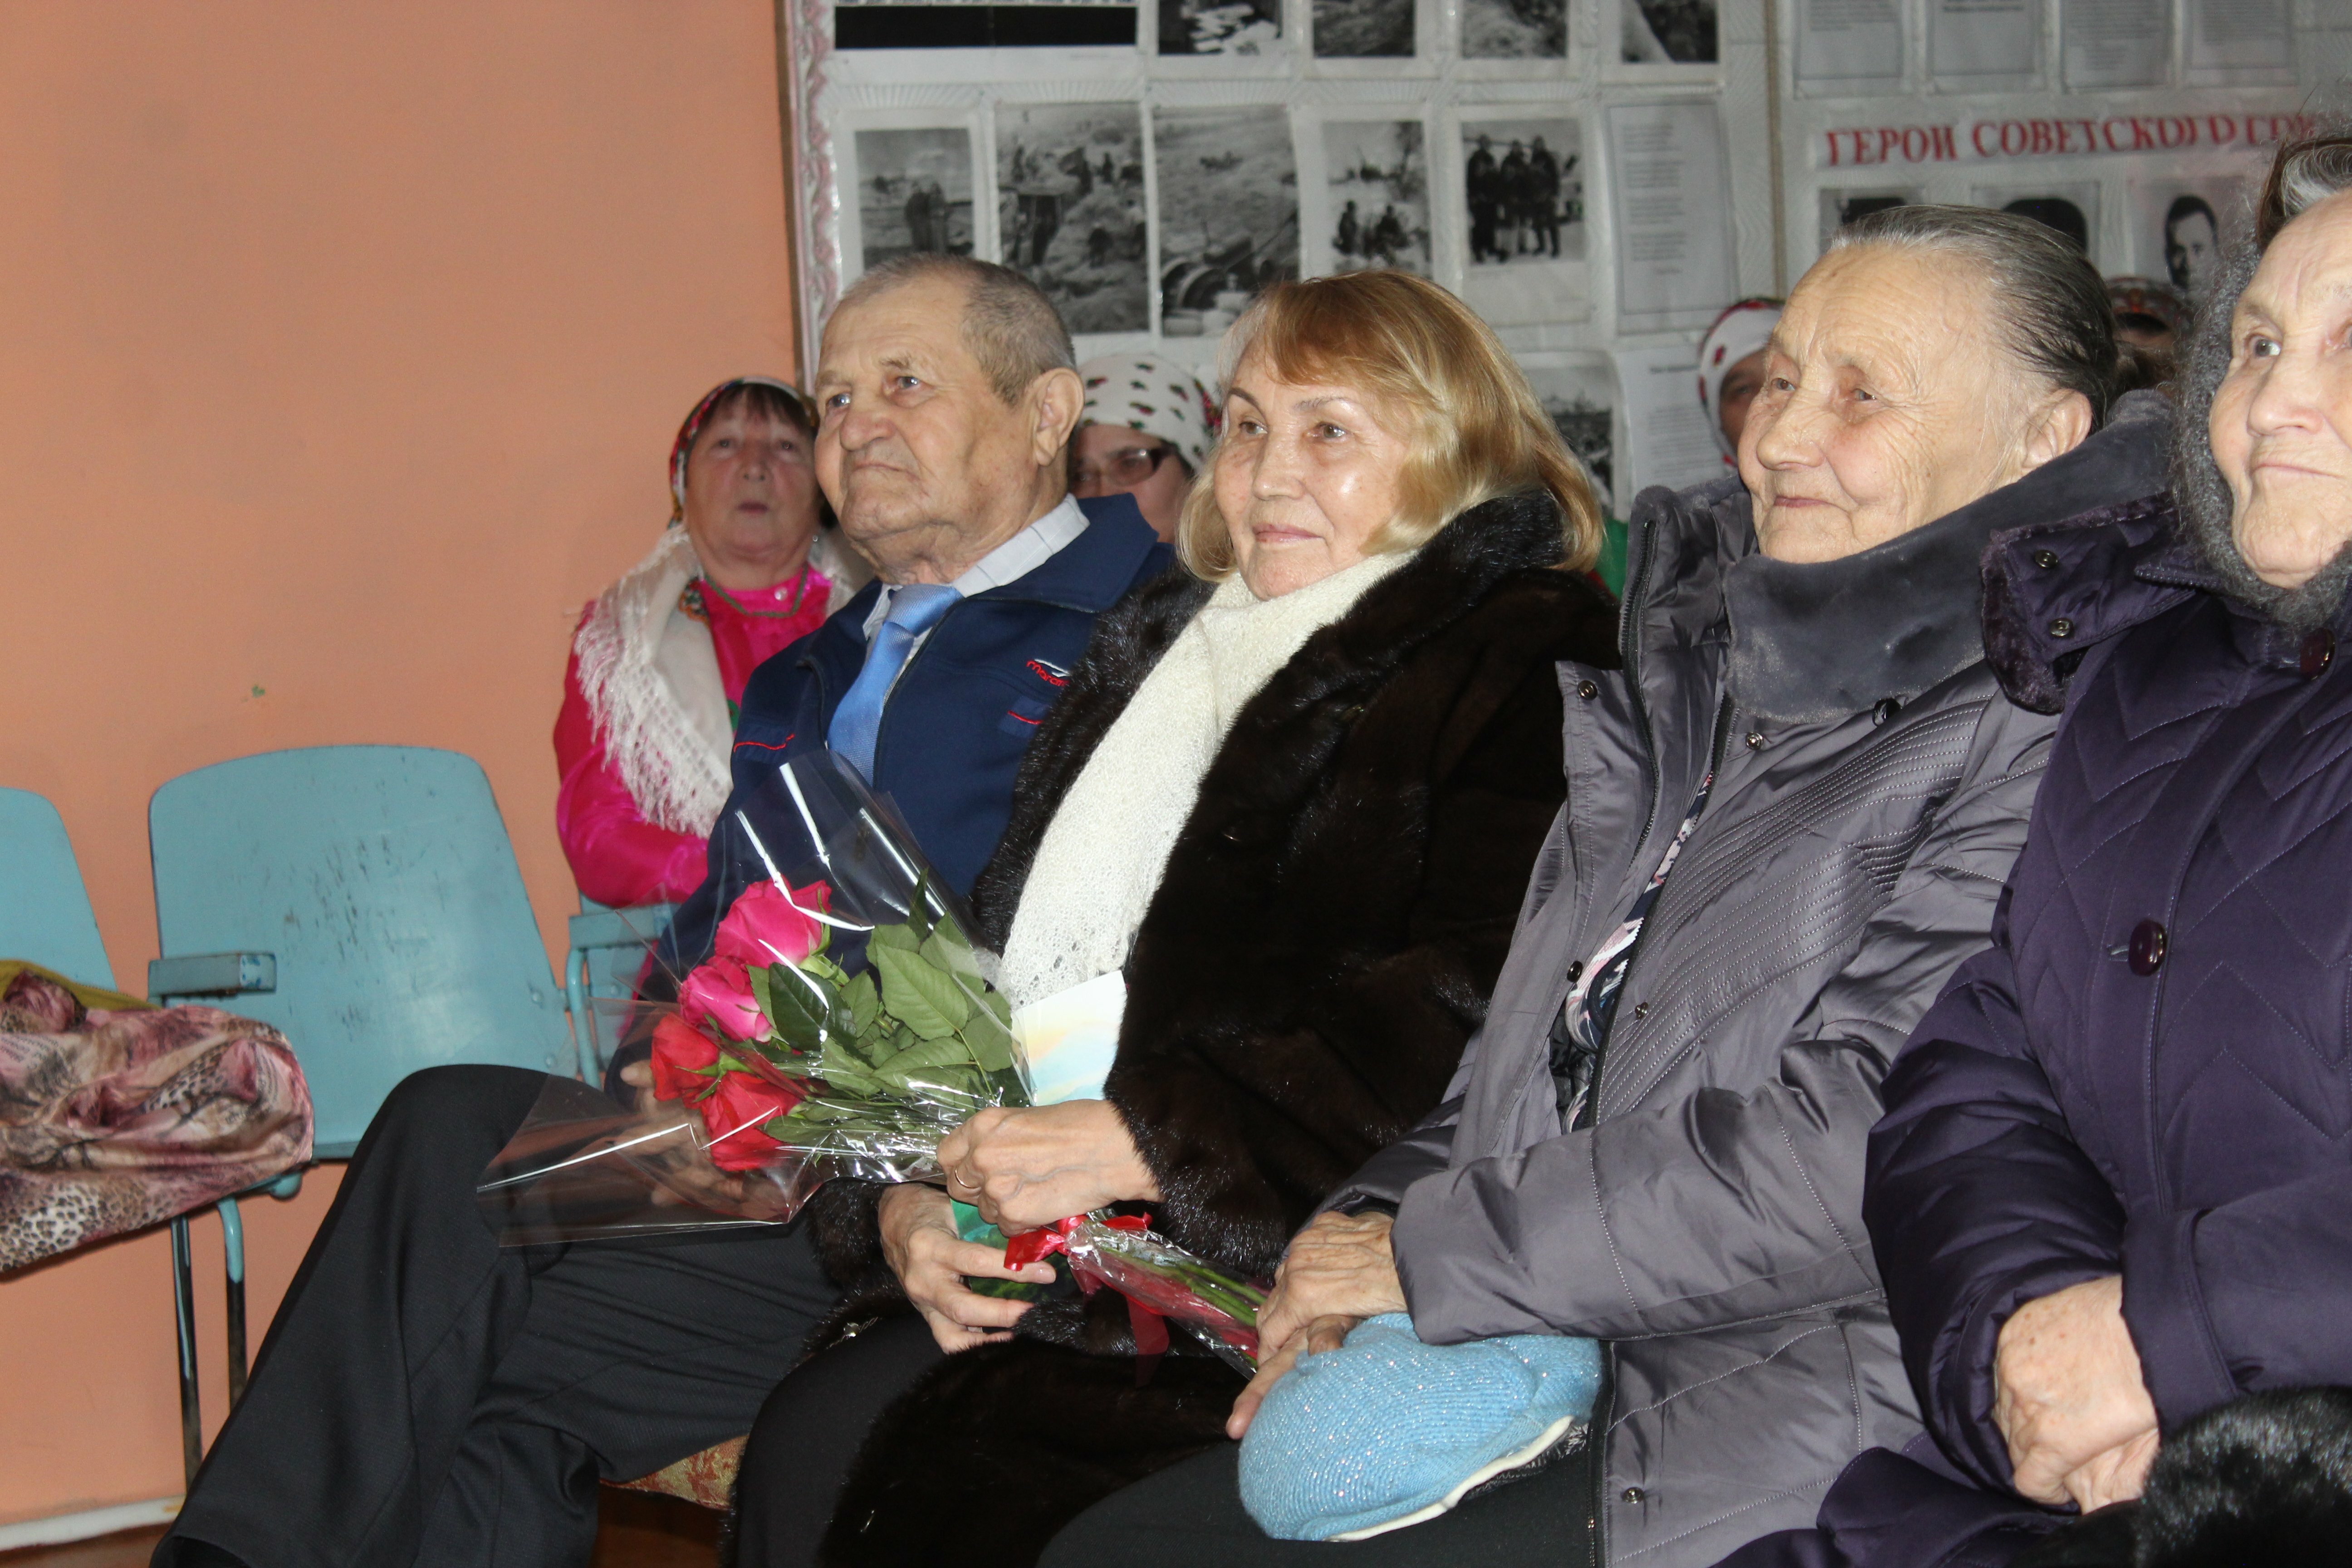 В деревне Бабаево состоялся литературно-музыкальный вечер в памяти марийского поэта Гани Гадиатова